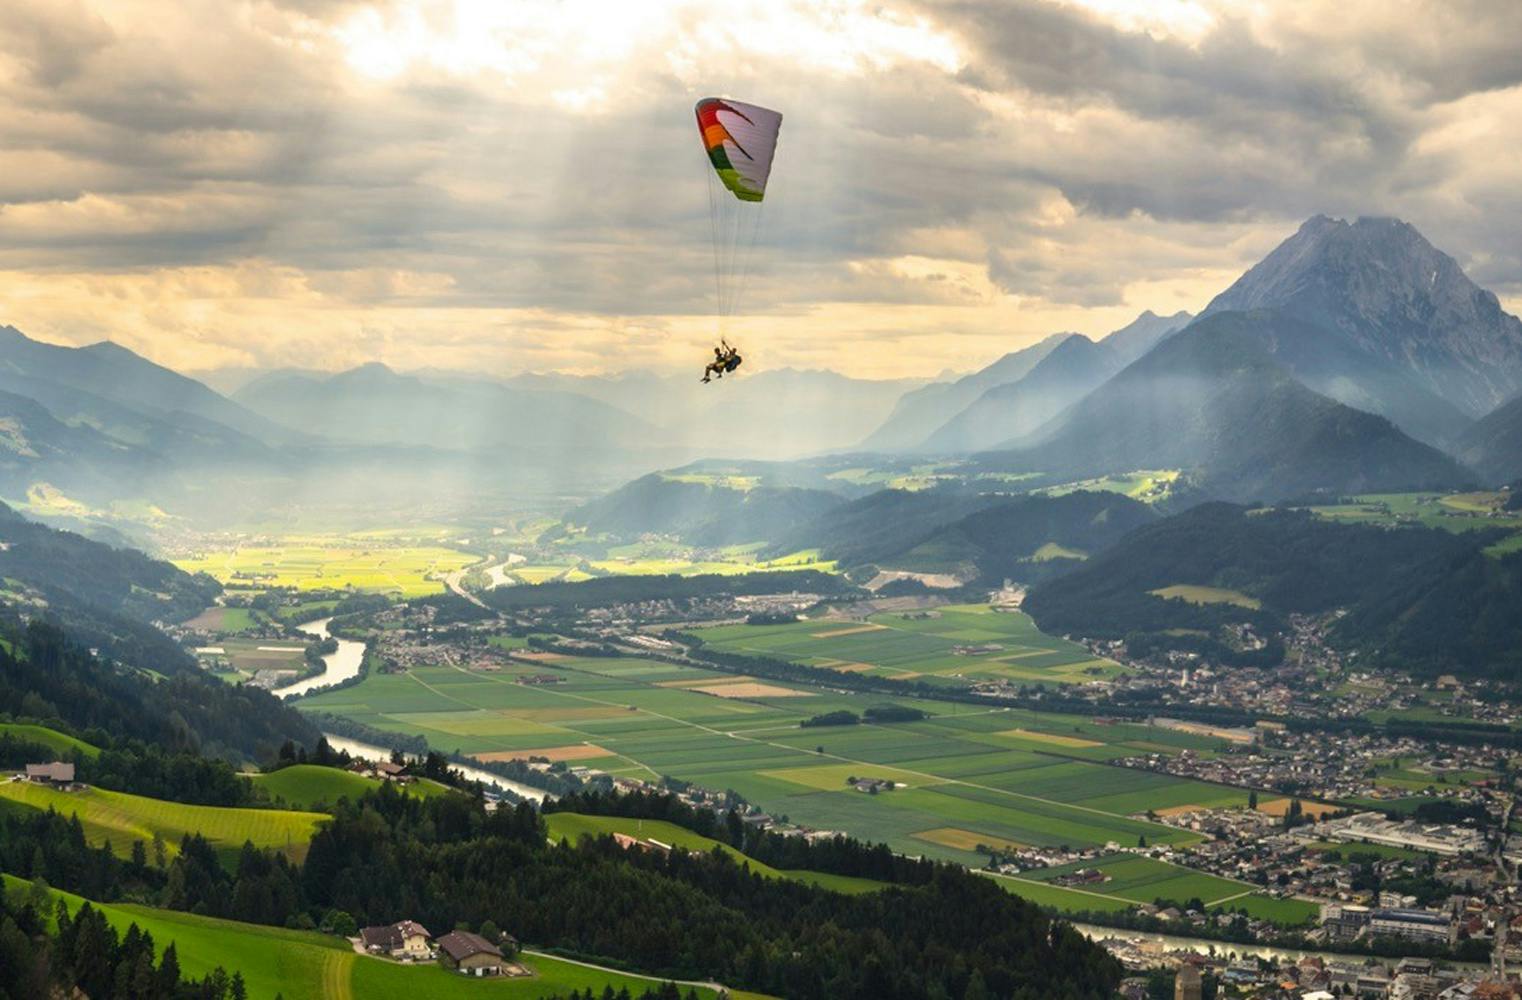 Gleitschirm Tandemflug | Tirol von oben erleben